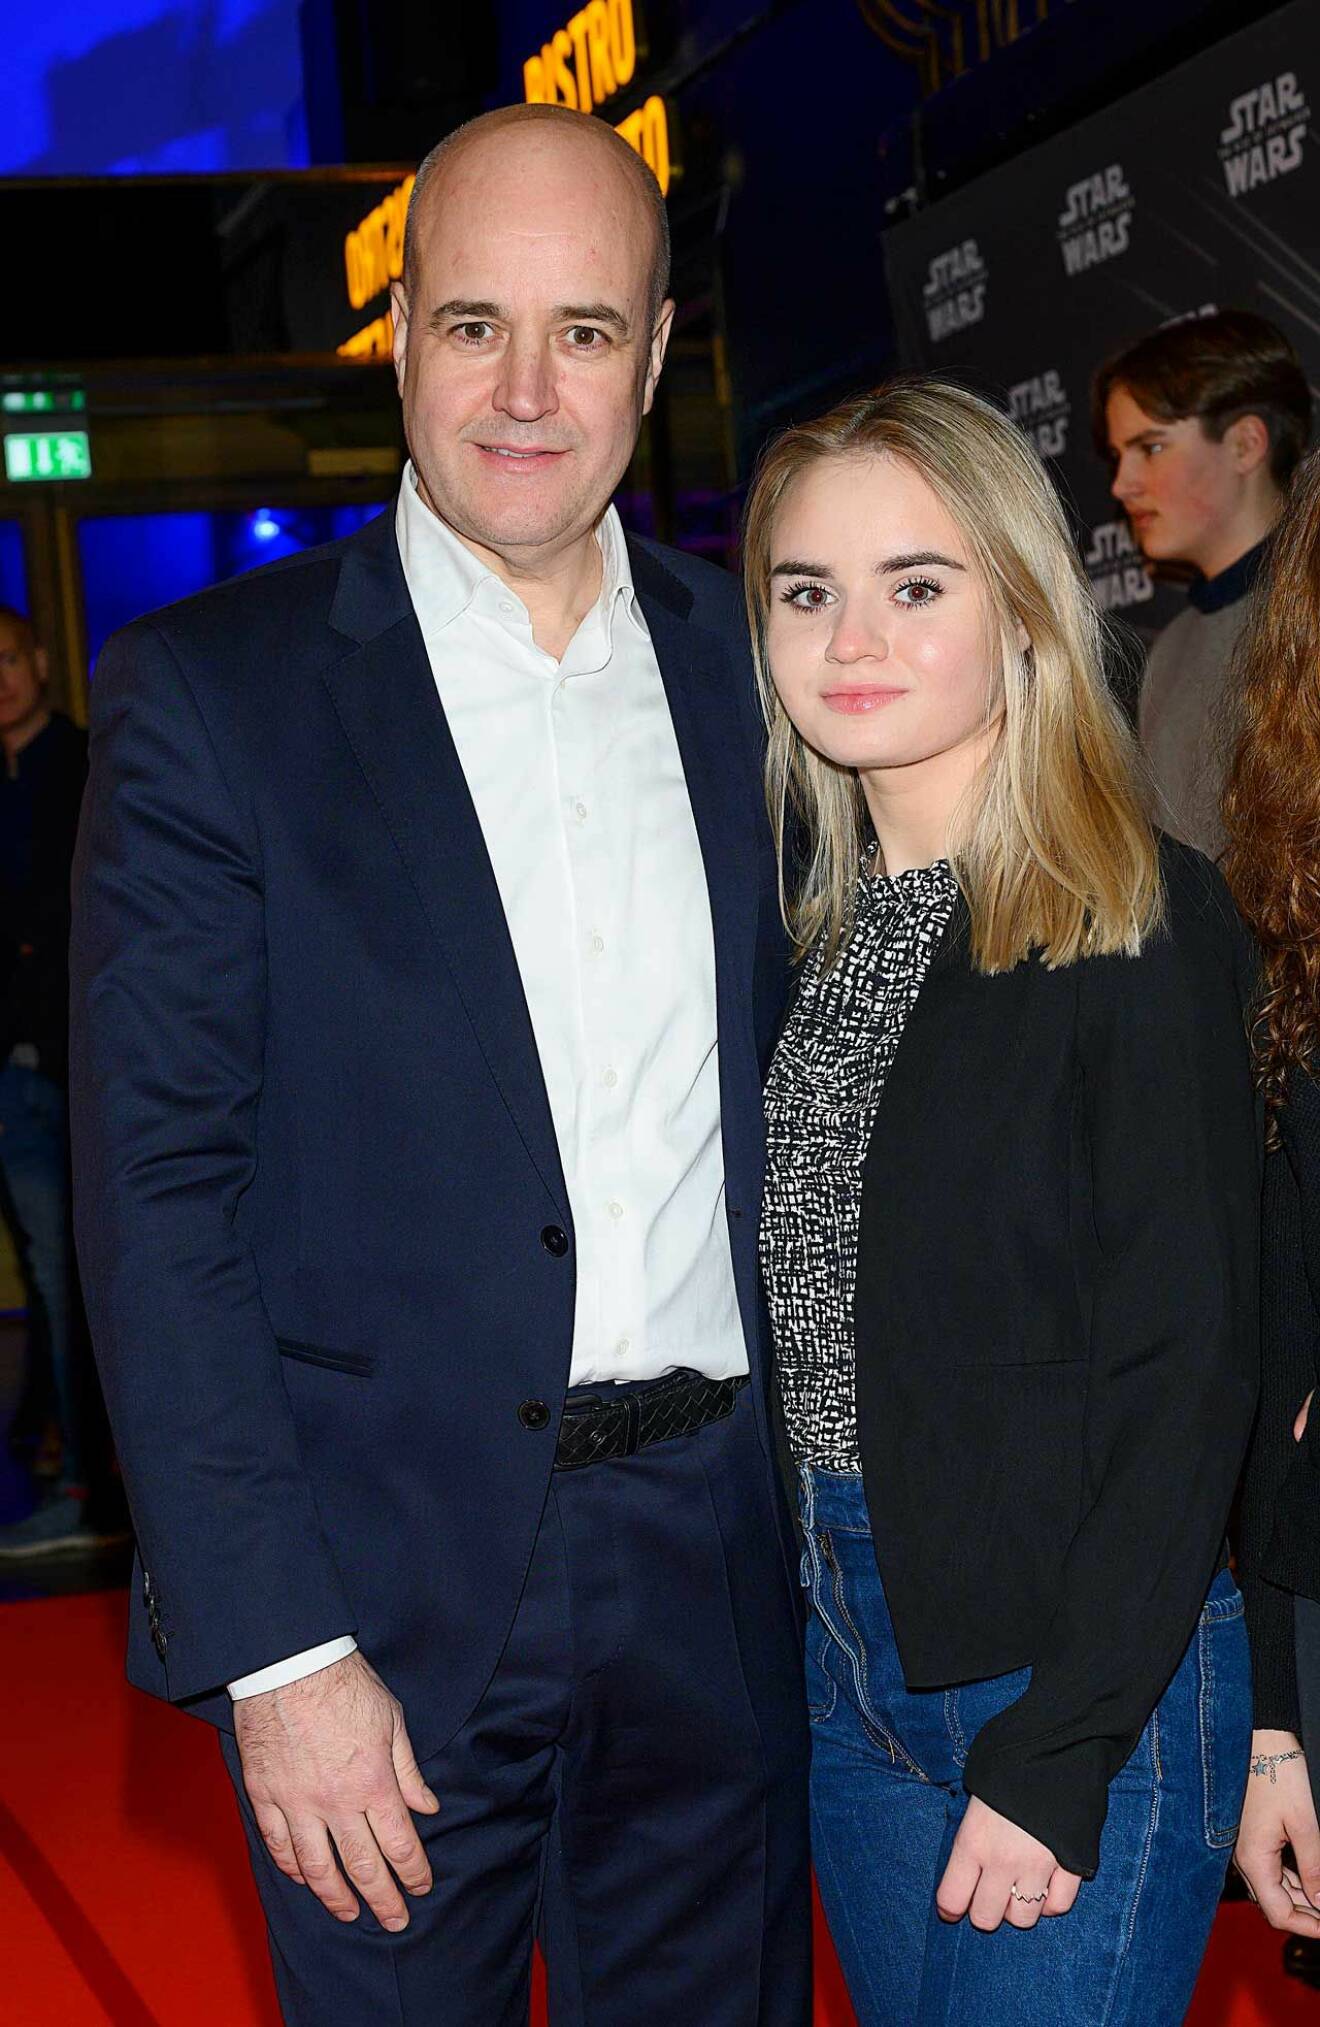 Fredrik Reinfeldt premiärminglade glatt med dottern Ebba Reinfeldt.